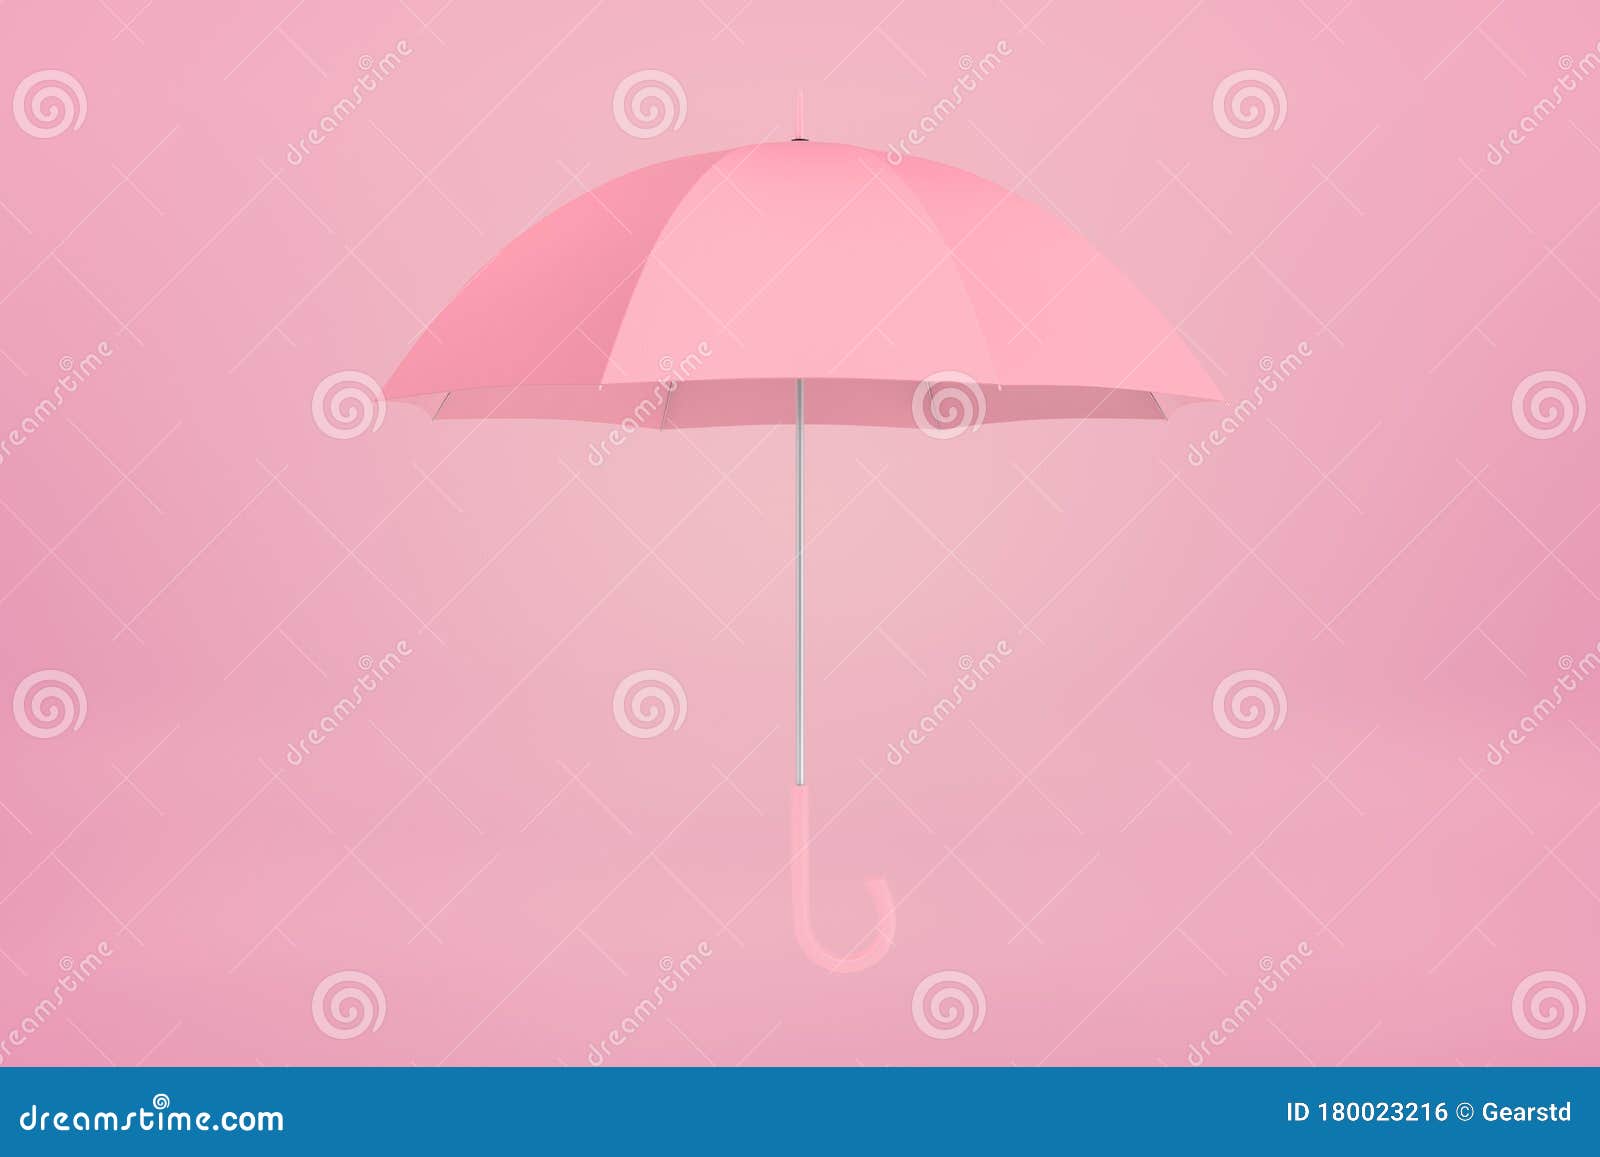 Đừng bỏ lỡ bức ảnh xinh đẹp với chiếc dù màu hồng đầy phong cách. Chắc chắn sẽ khiến bạn khao khát đưa nó cùng bạn đi chơi bất kỳ nơi đâu.